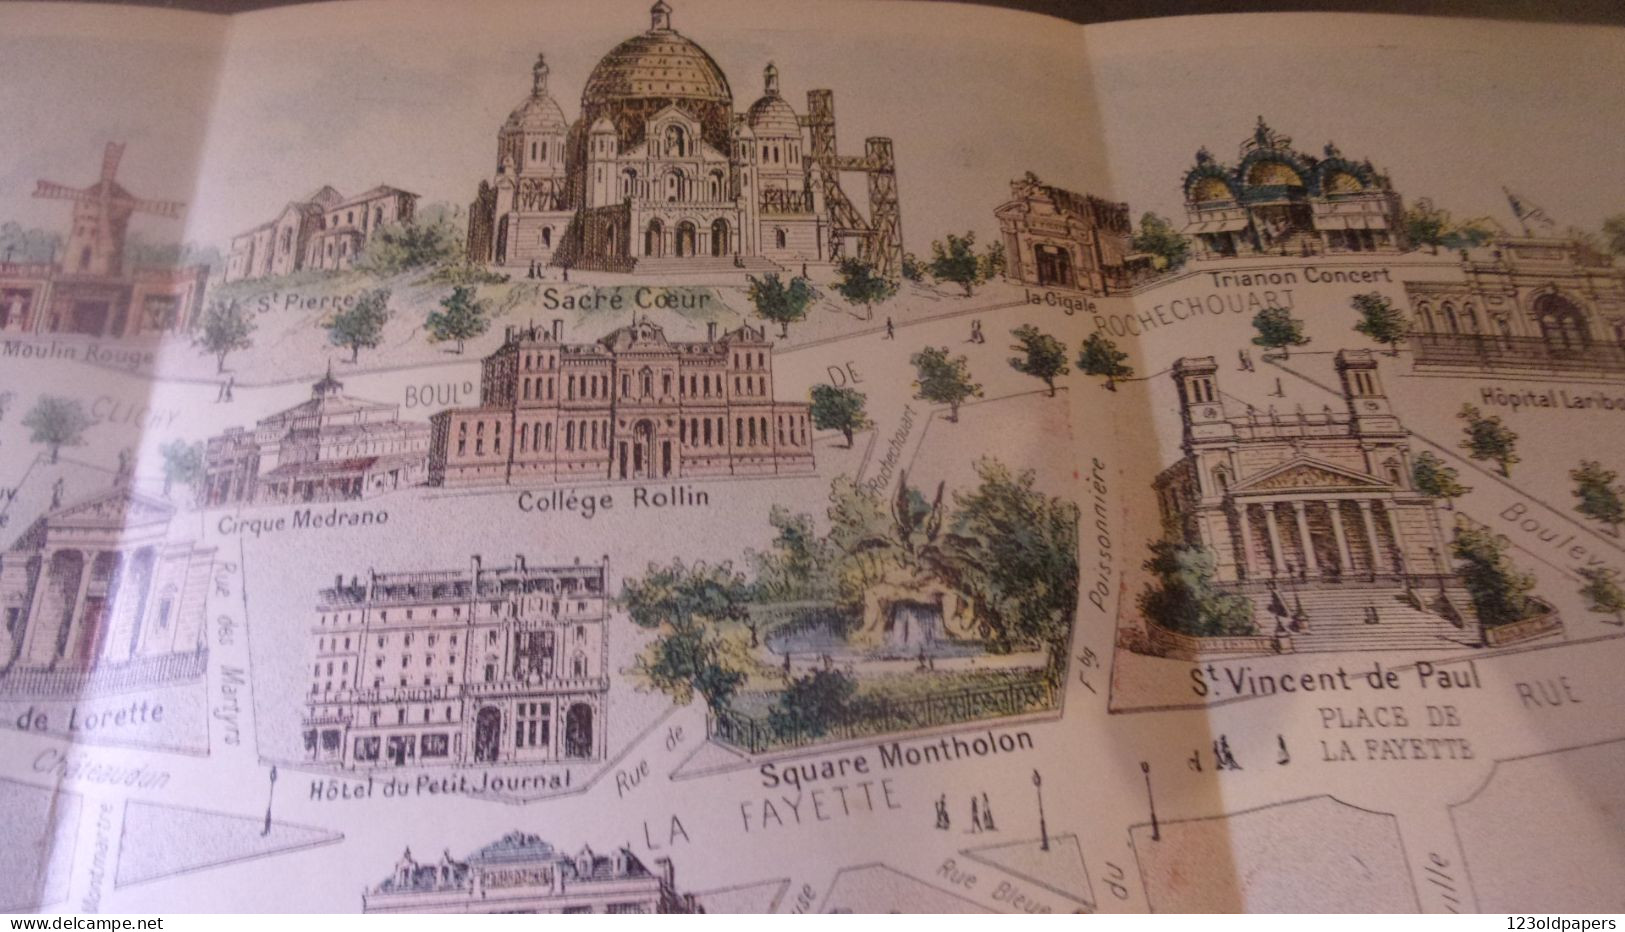 Le Guide Illustré Des Promenades De PARIS - N° 3 ARC DE TRIOMPHE AUX BUTTES CHAUMONT - 1801-1900